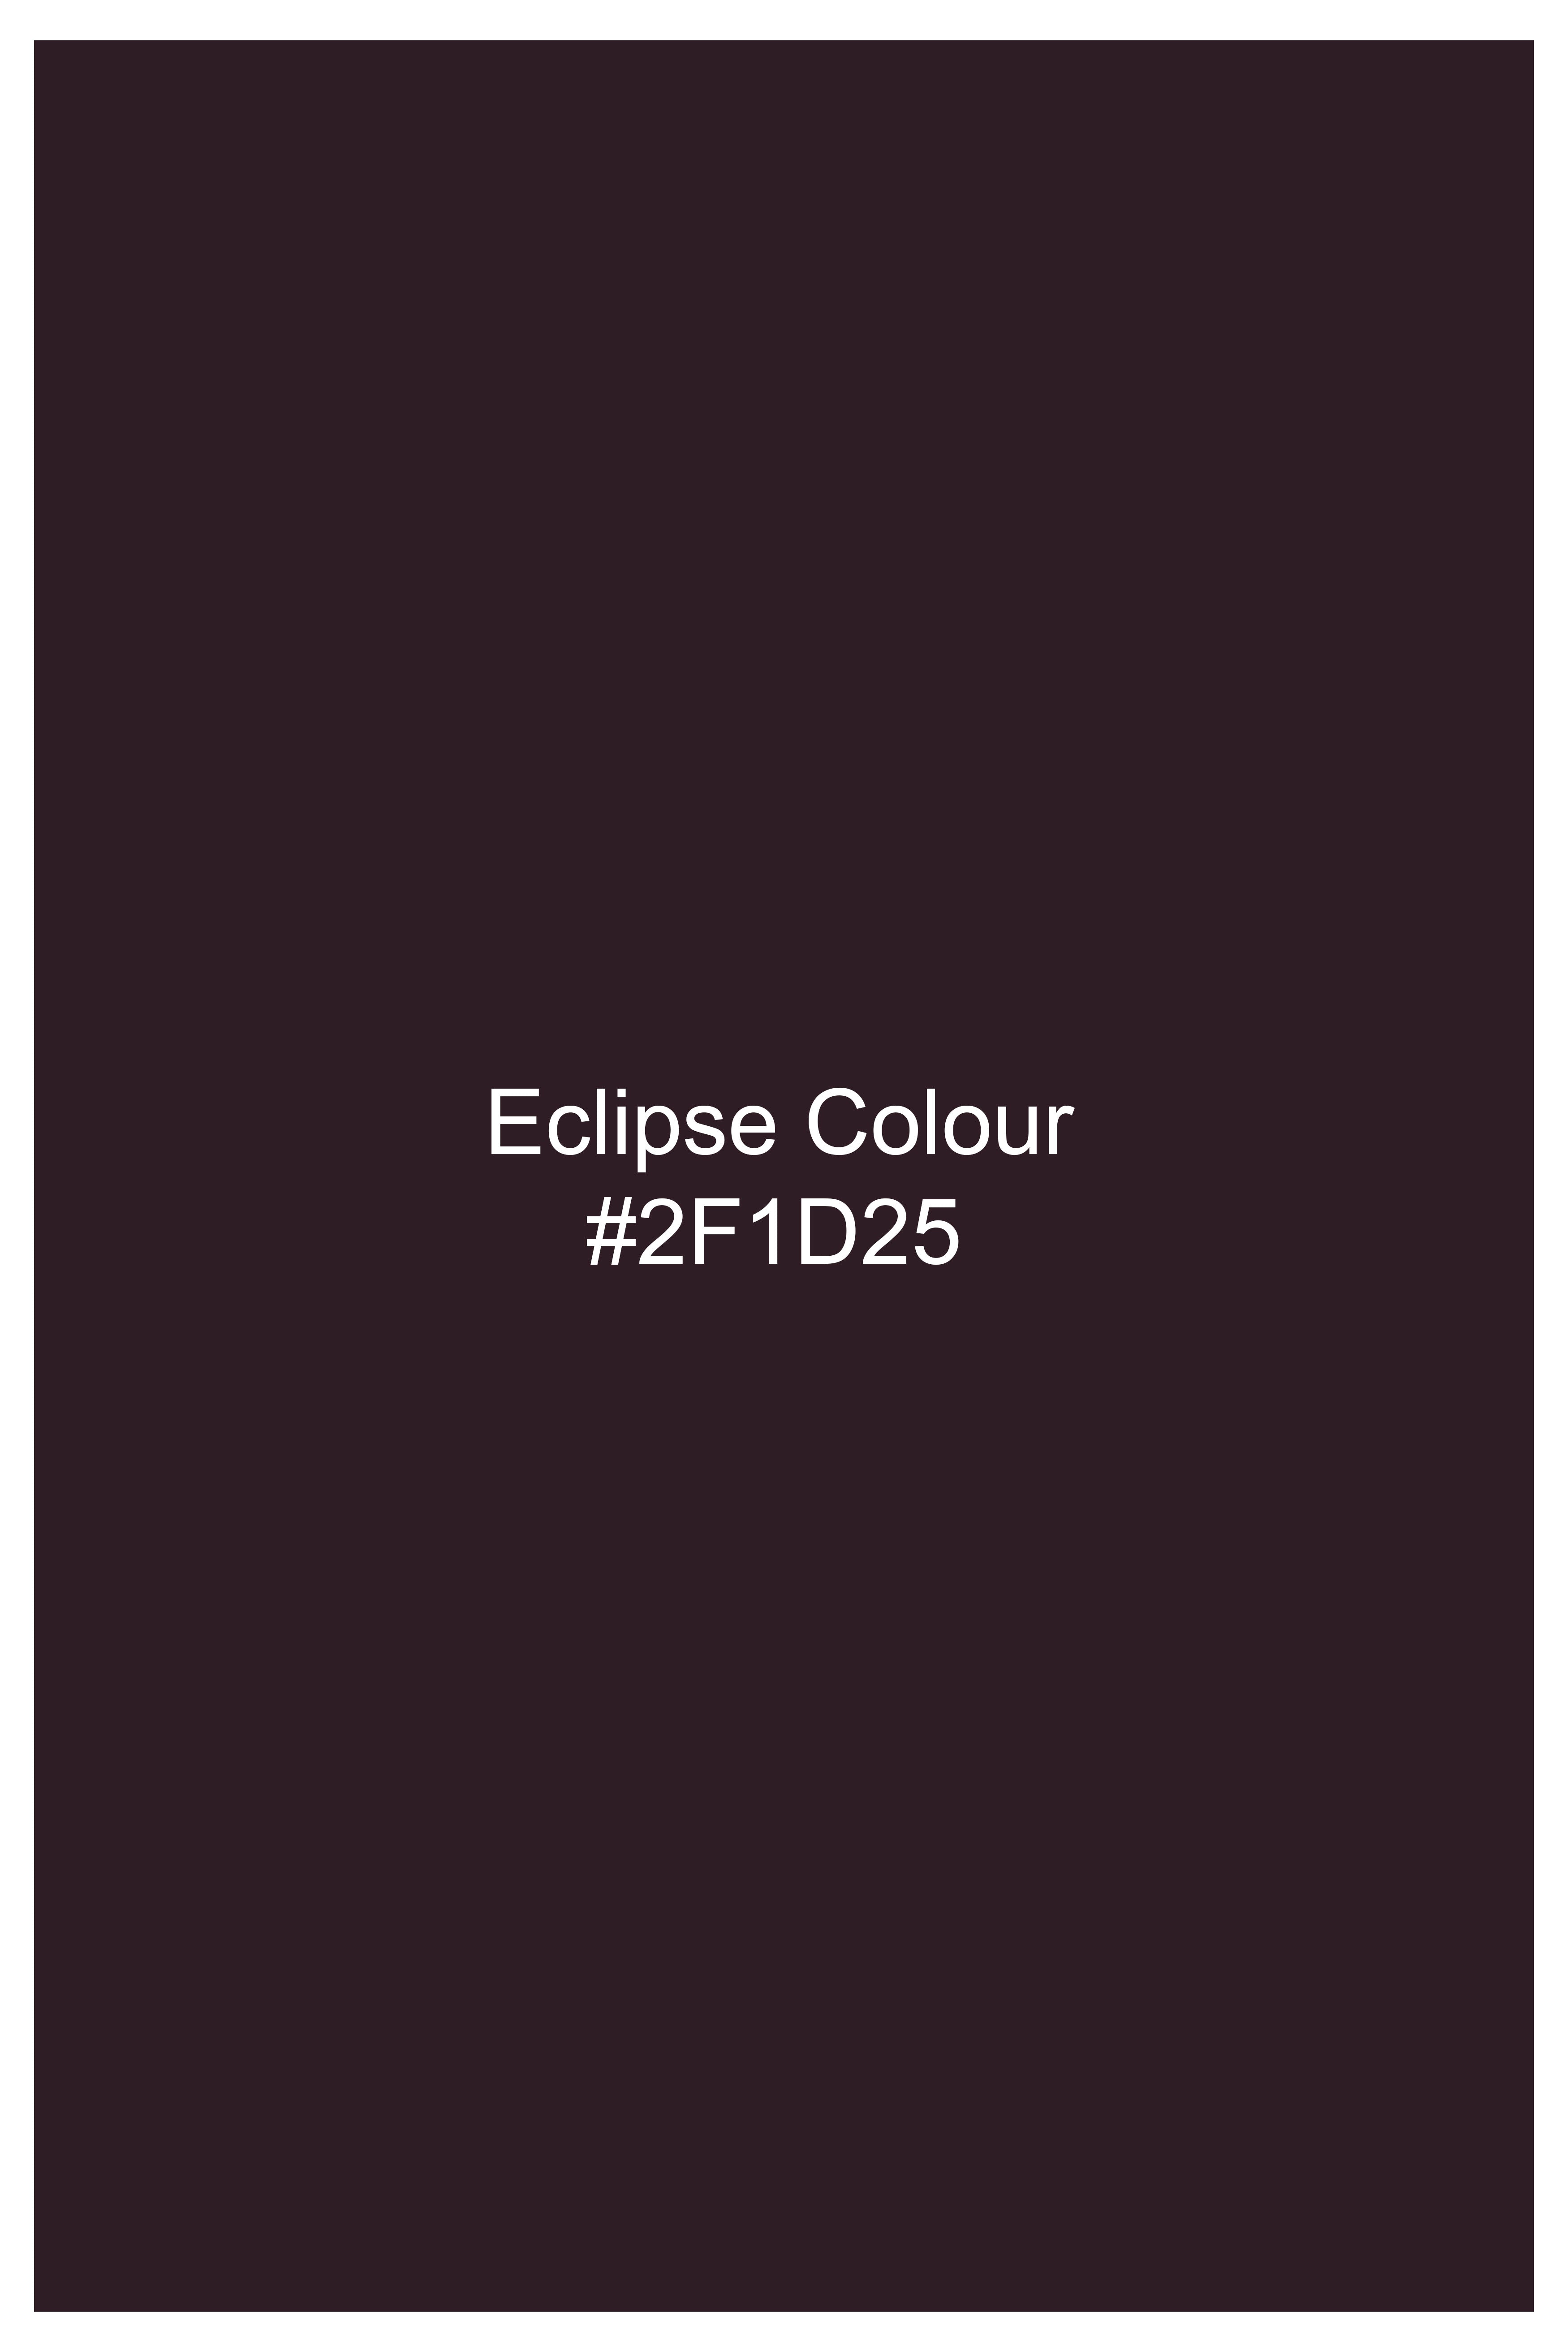 Eclipse Maroon Wool Rich  Pant T2770-28, T2770-30, T2770-32, T2770-34, T2770-36, T2770-38, T2770-40, T2770-42, T2770-44